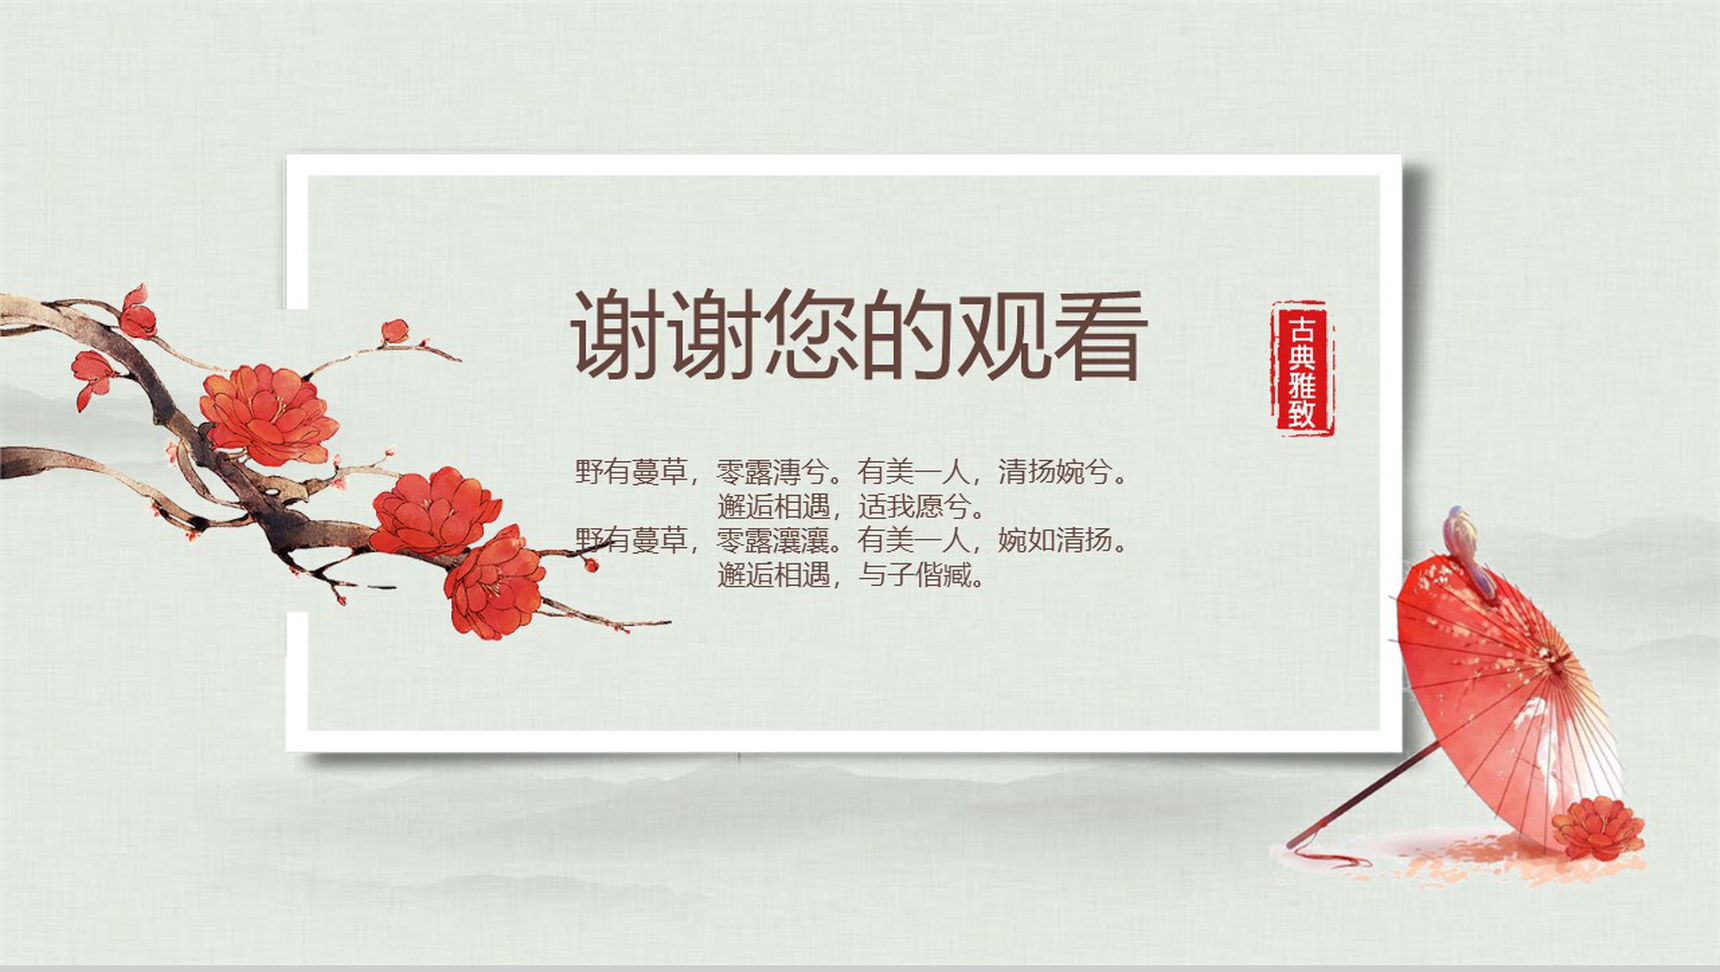 中国传统文化宫廷风传统文化PPT模板-13